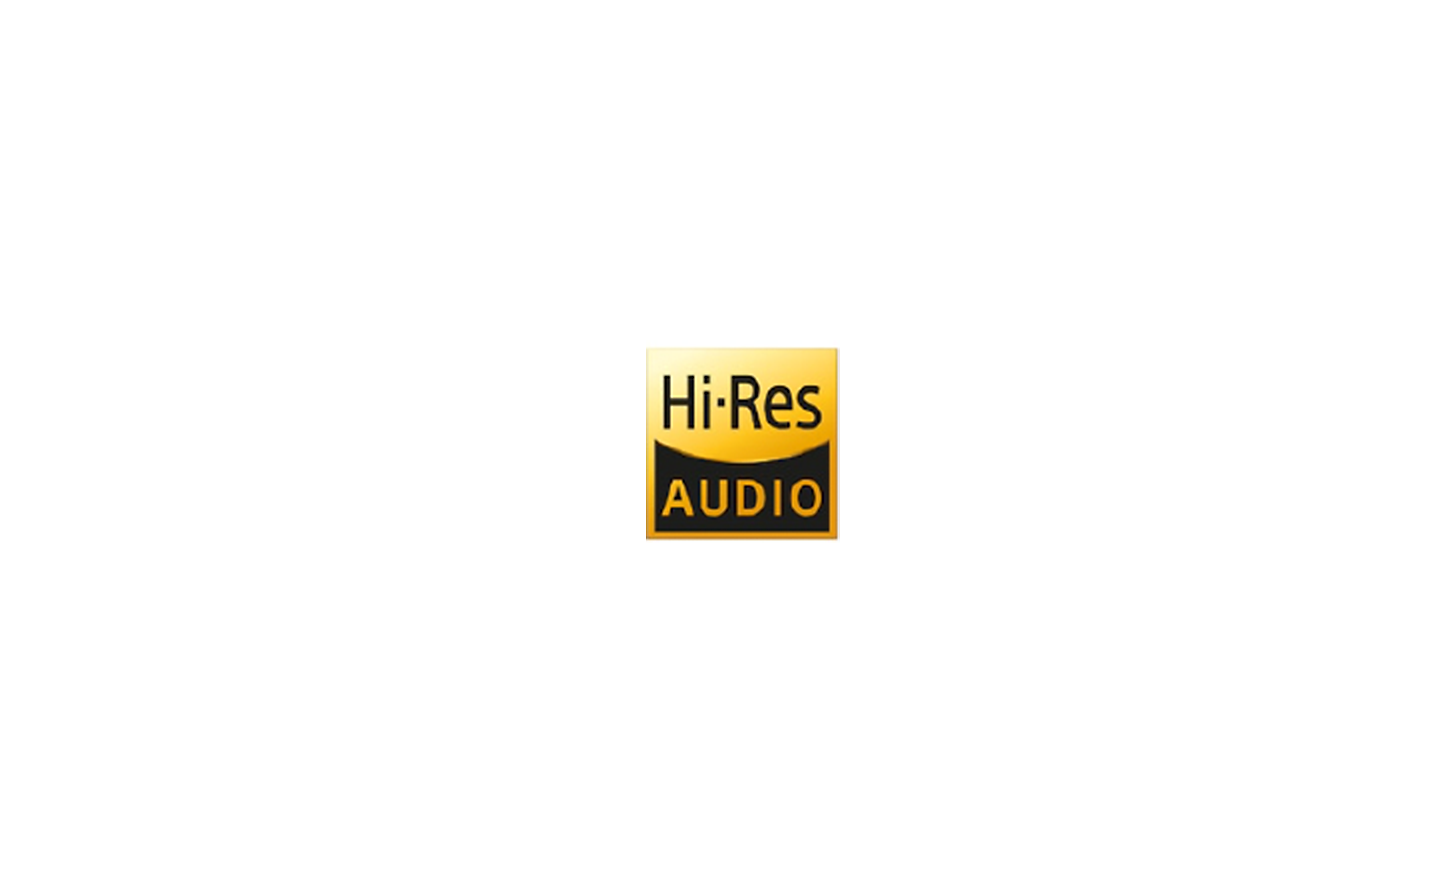 Bilde av en svart og gul «Hi-Res AUDIO»-logo (høyoppløselig lyd)